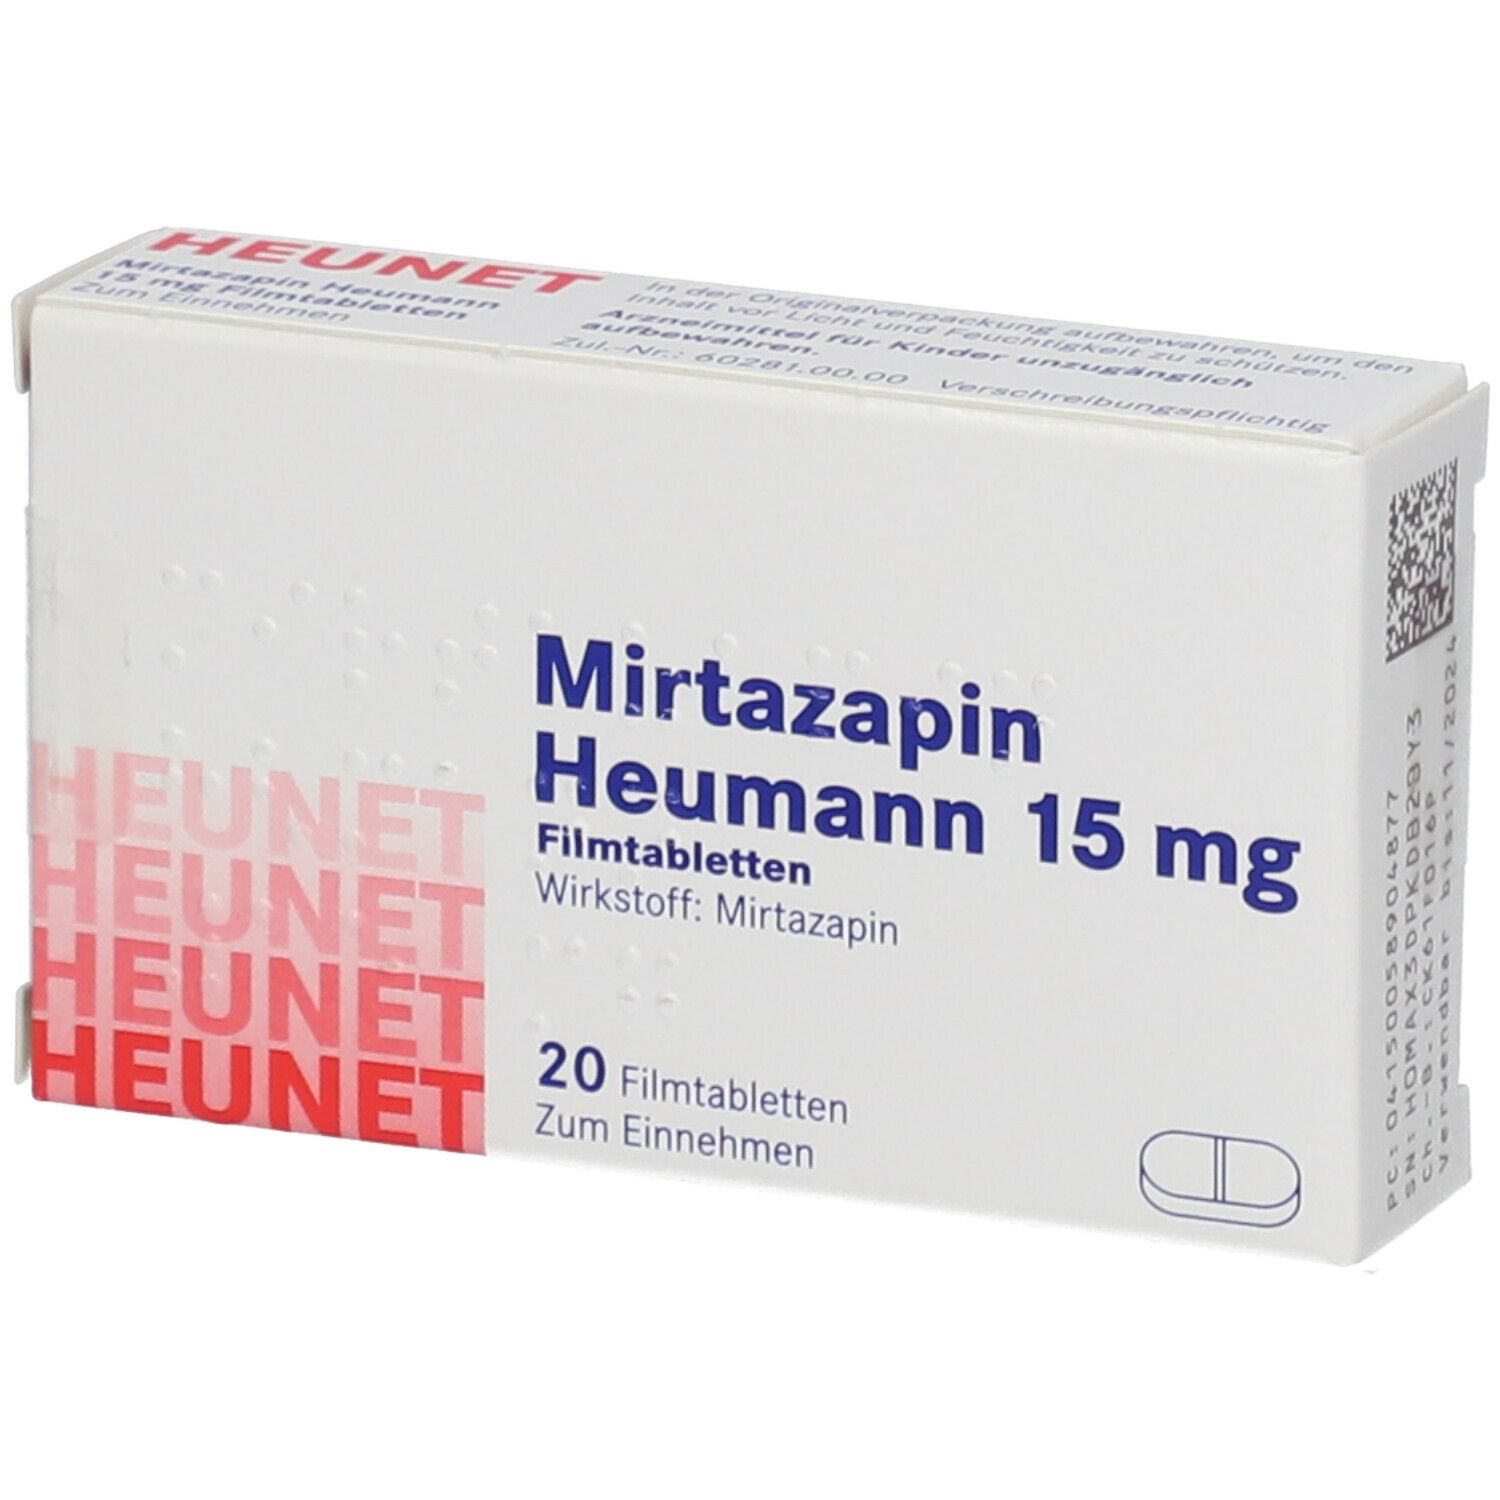 Mirtazapin Heumann 15 mg